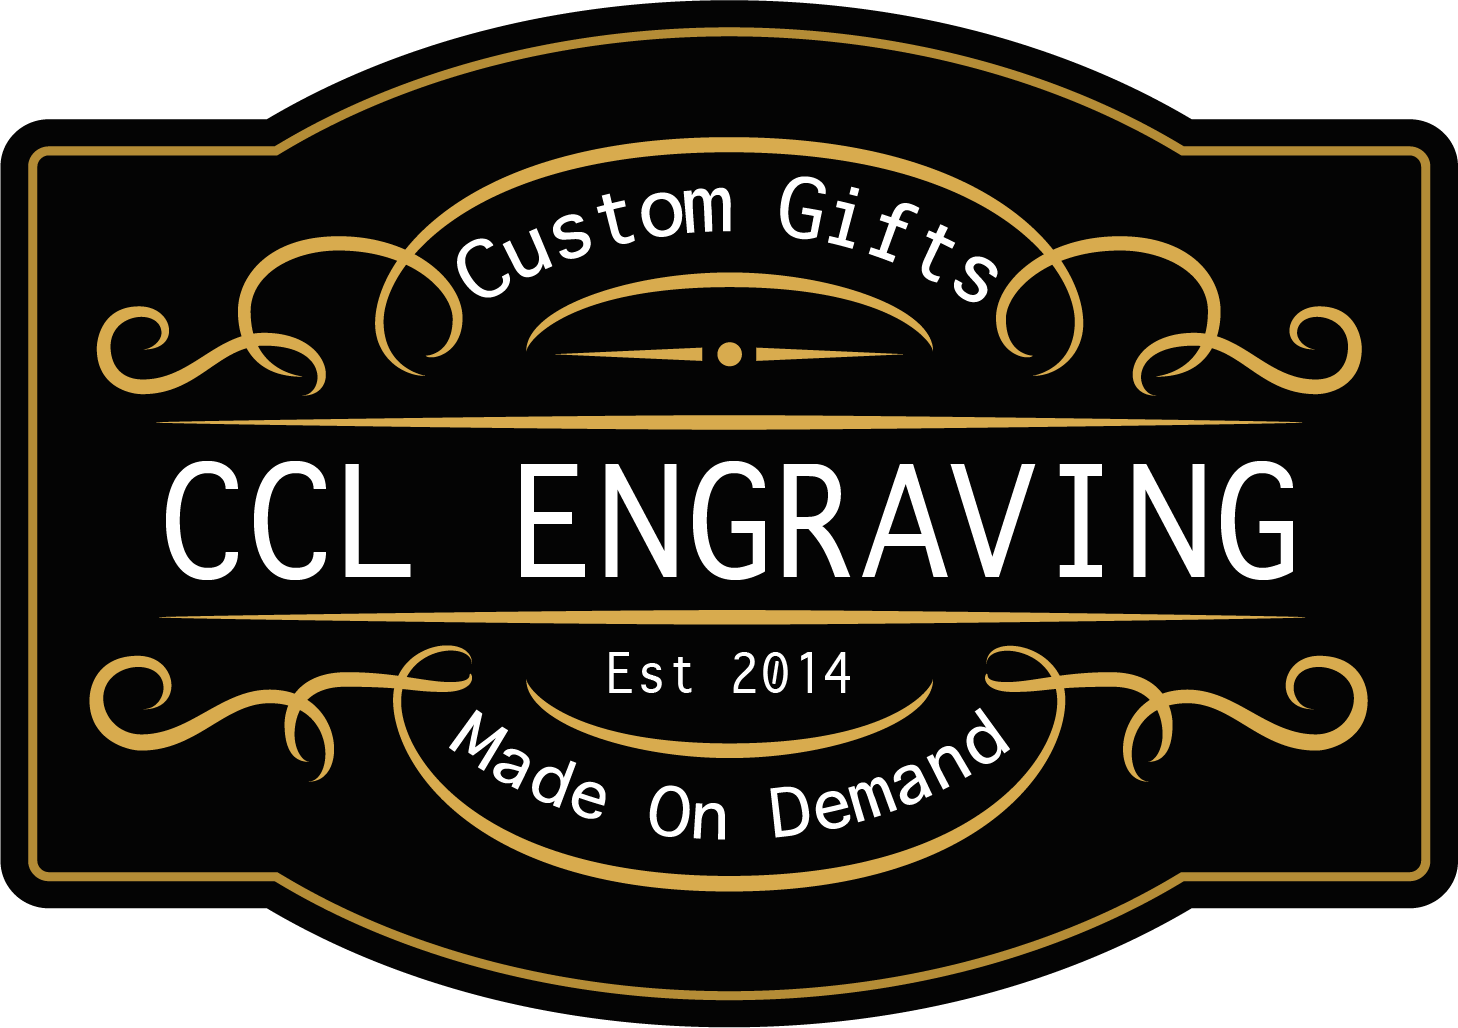 CCL Engraving